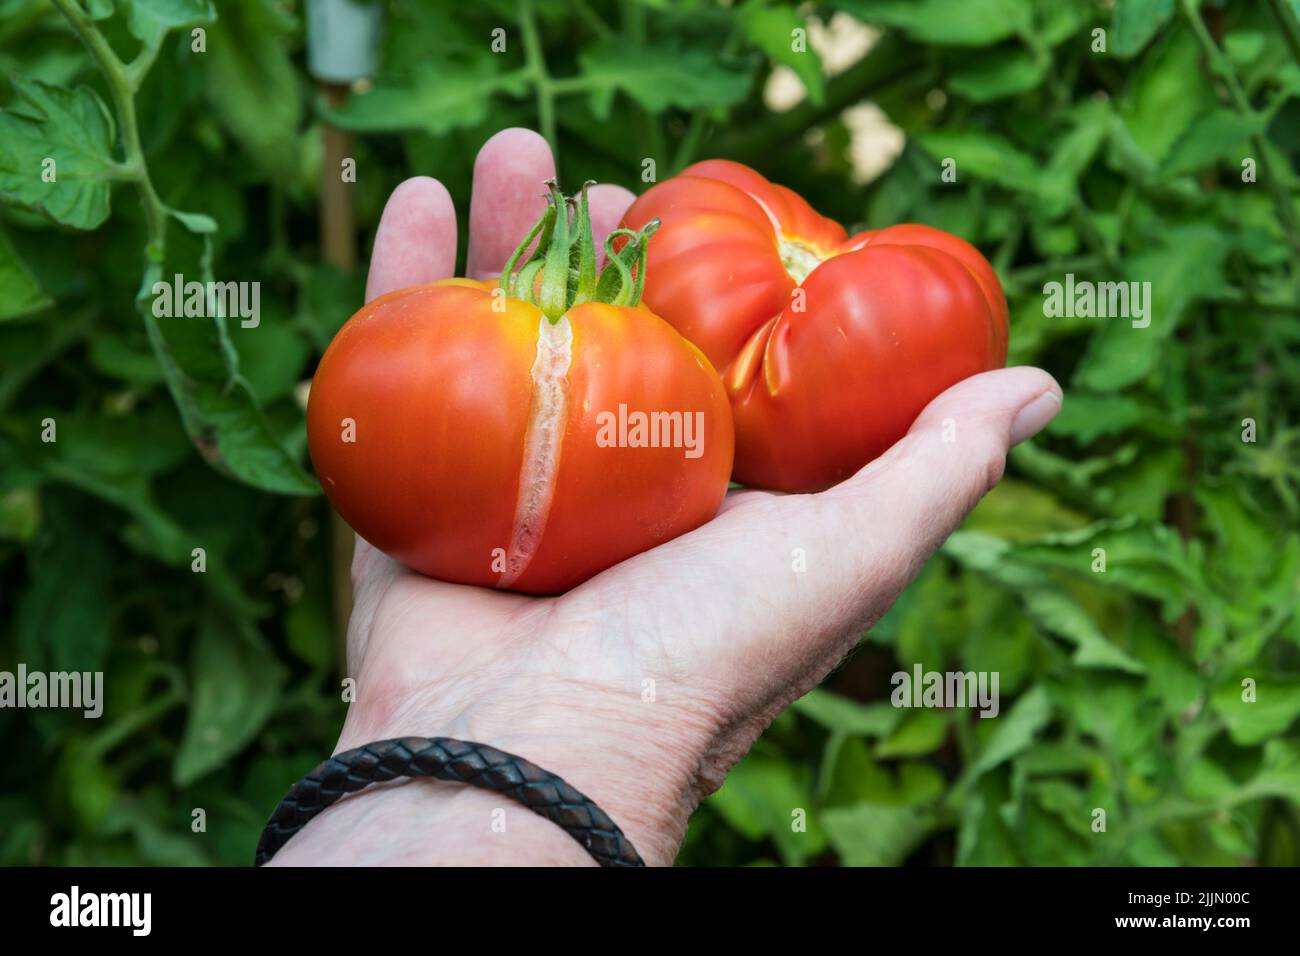 Escisión vertical en la piel del tomate marmande recién recogido causada por riego irregular - período seco excesivo o sequía seguido de riego. Foto de stock